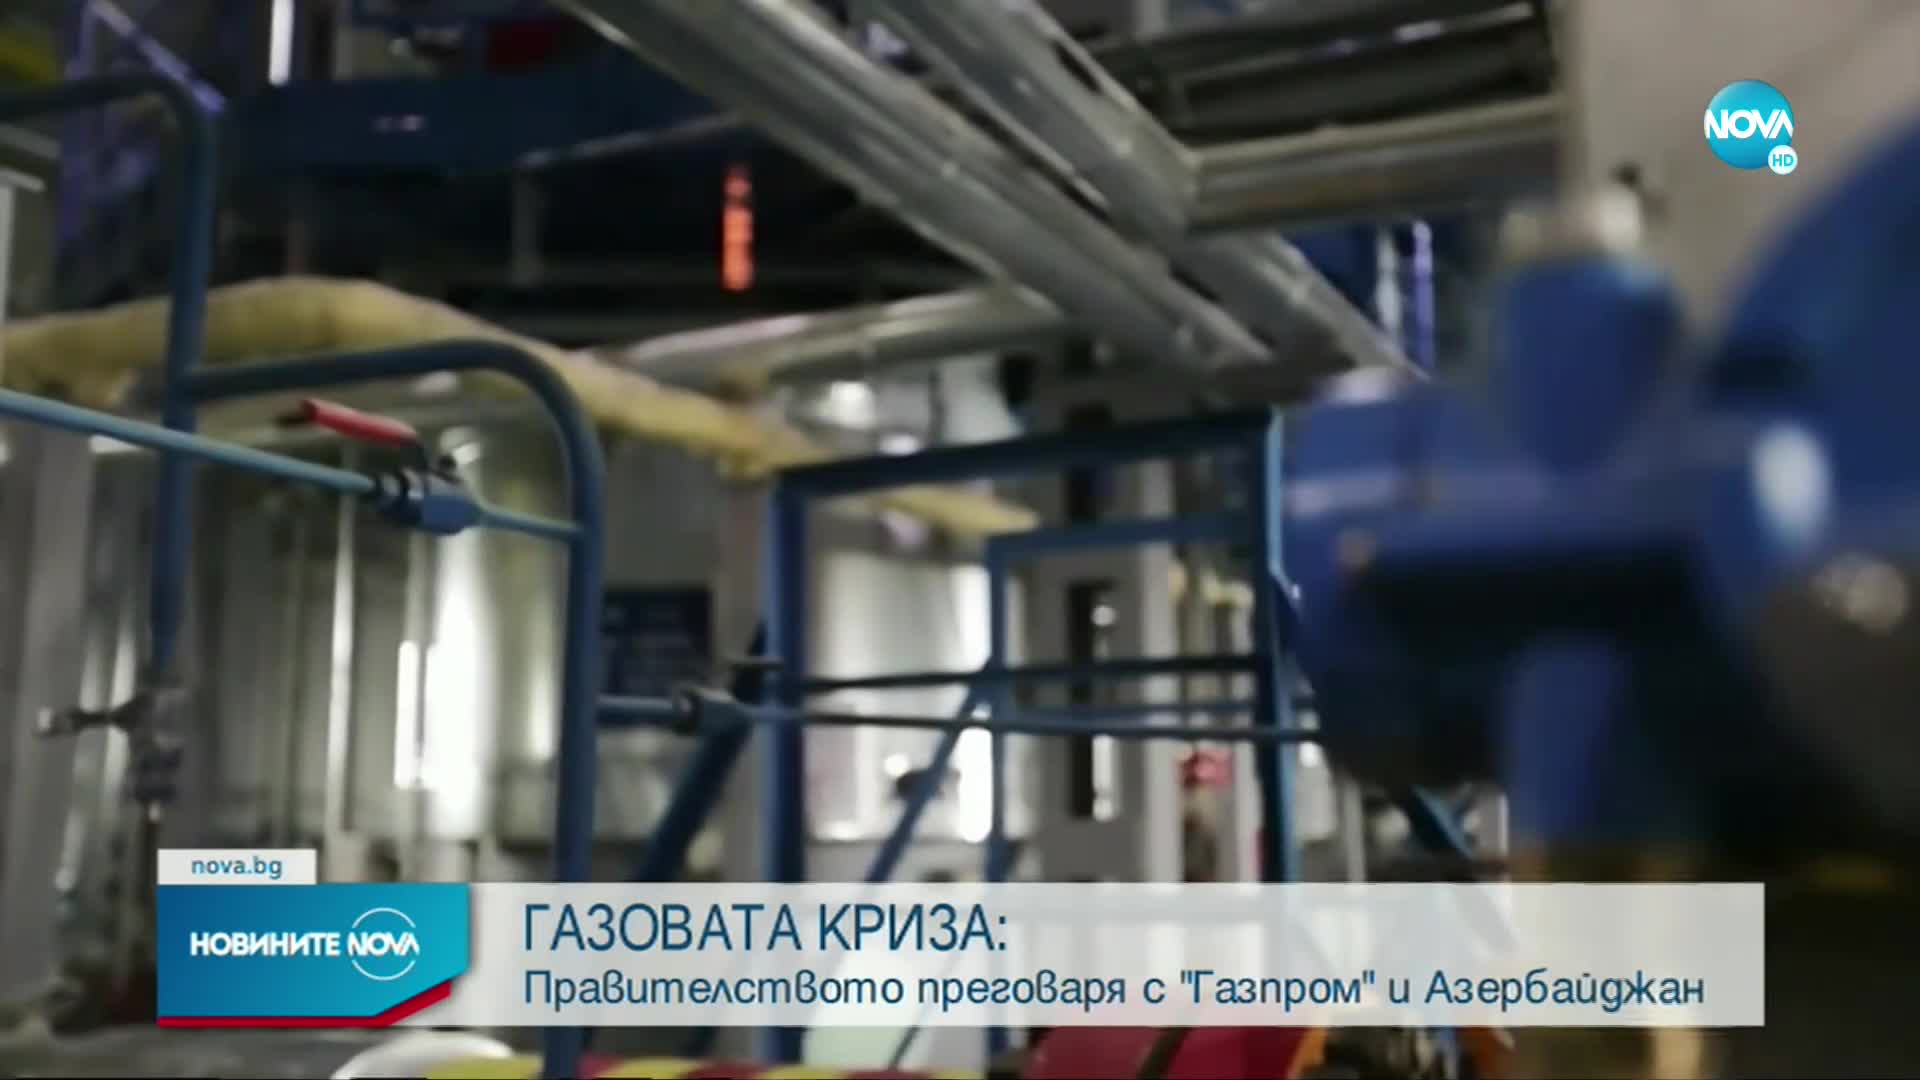 Енергийният министър: "Газпром експорт" моментално става абсолютно валидна опция, с която започваме